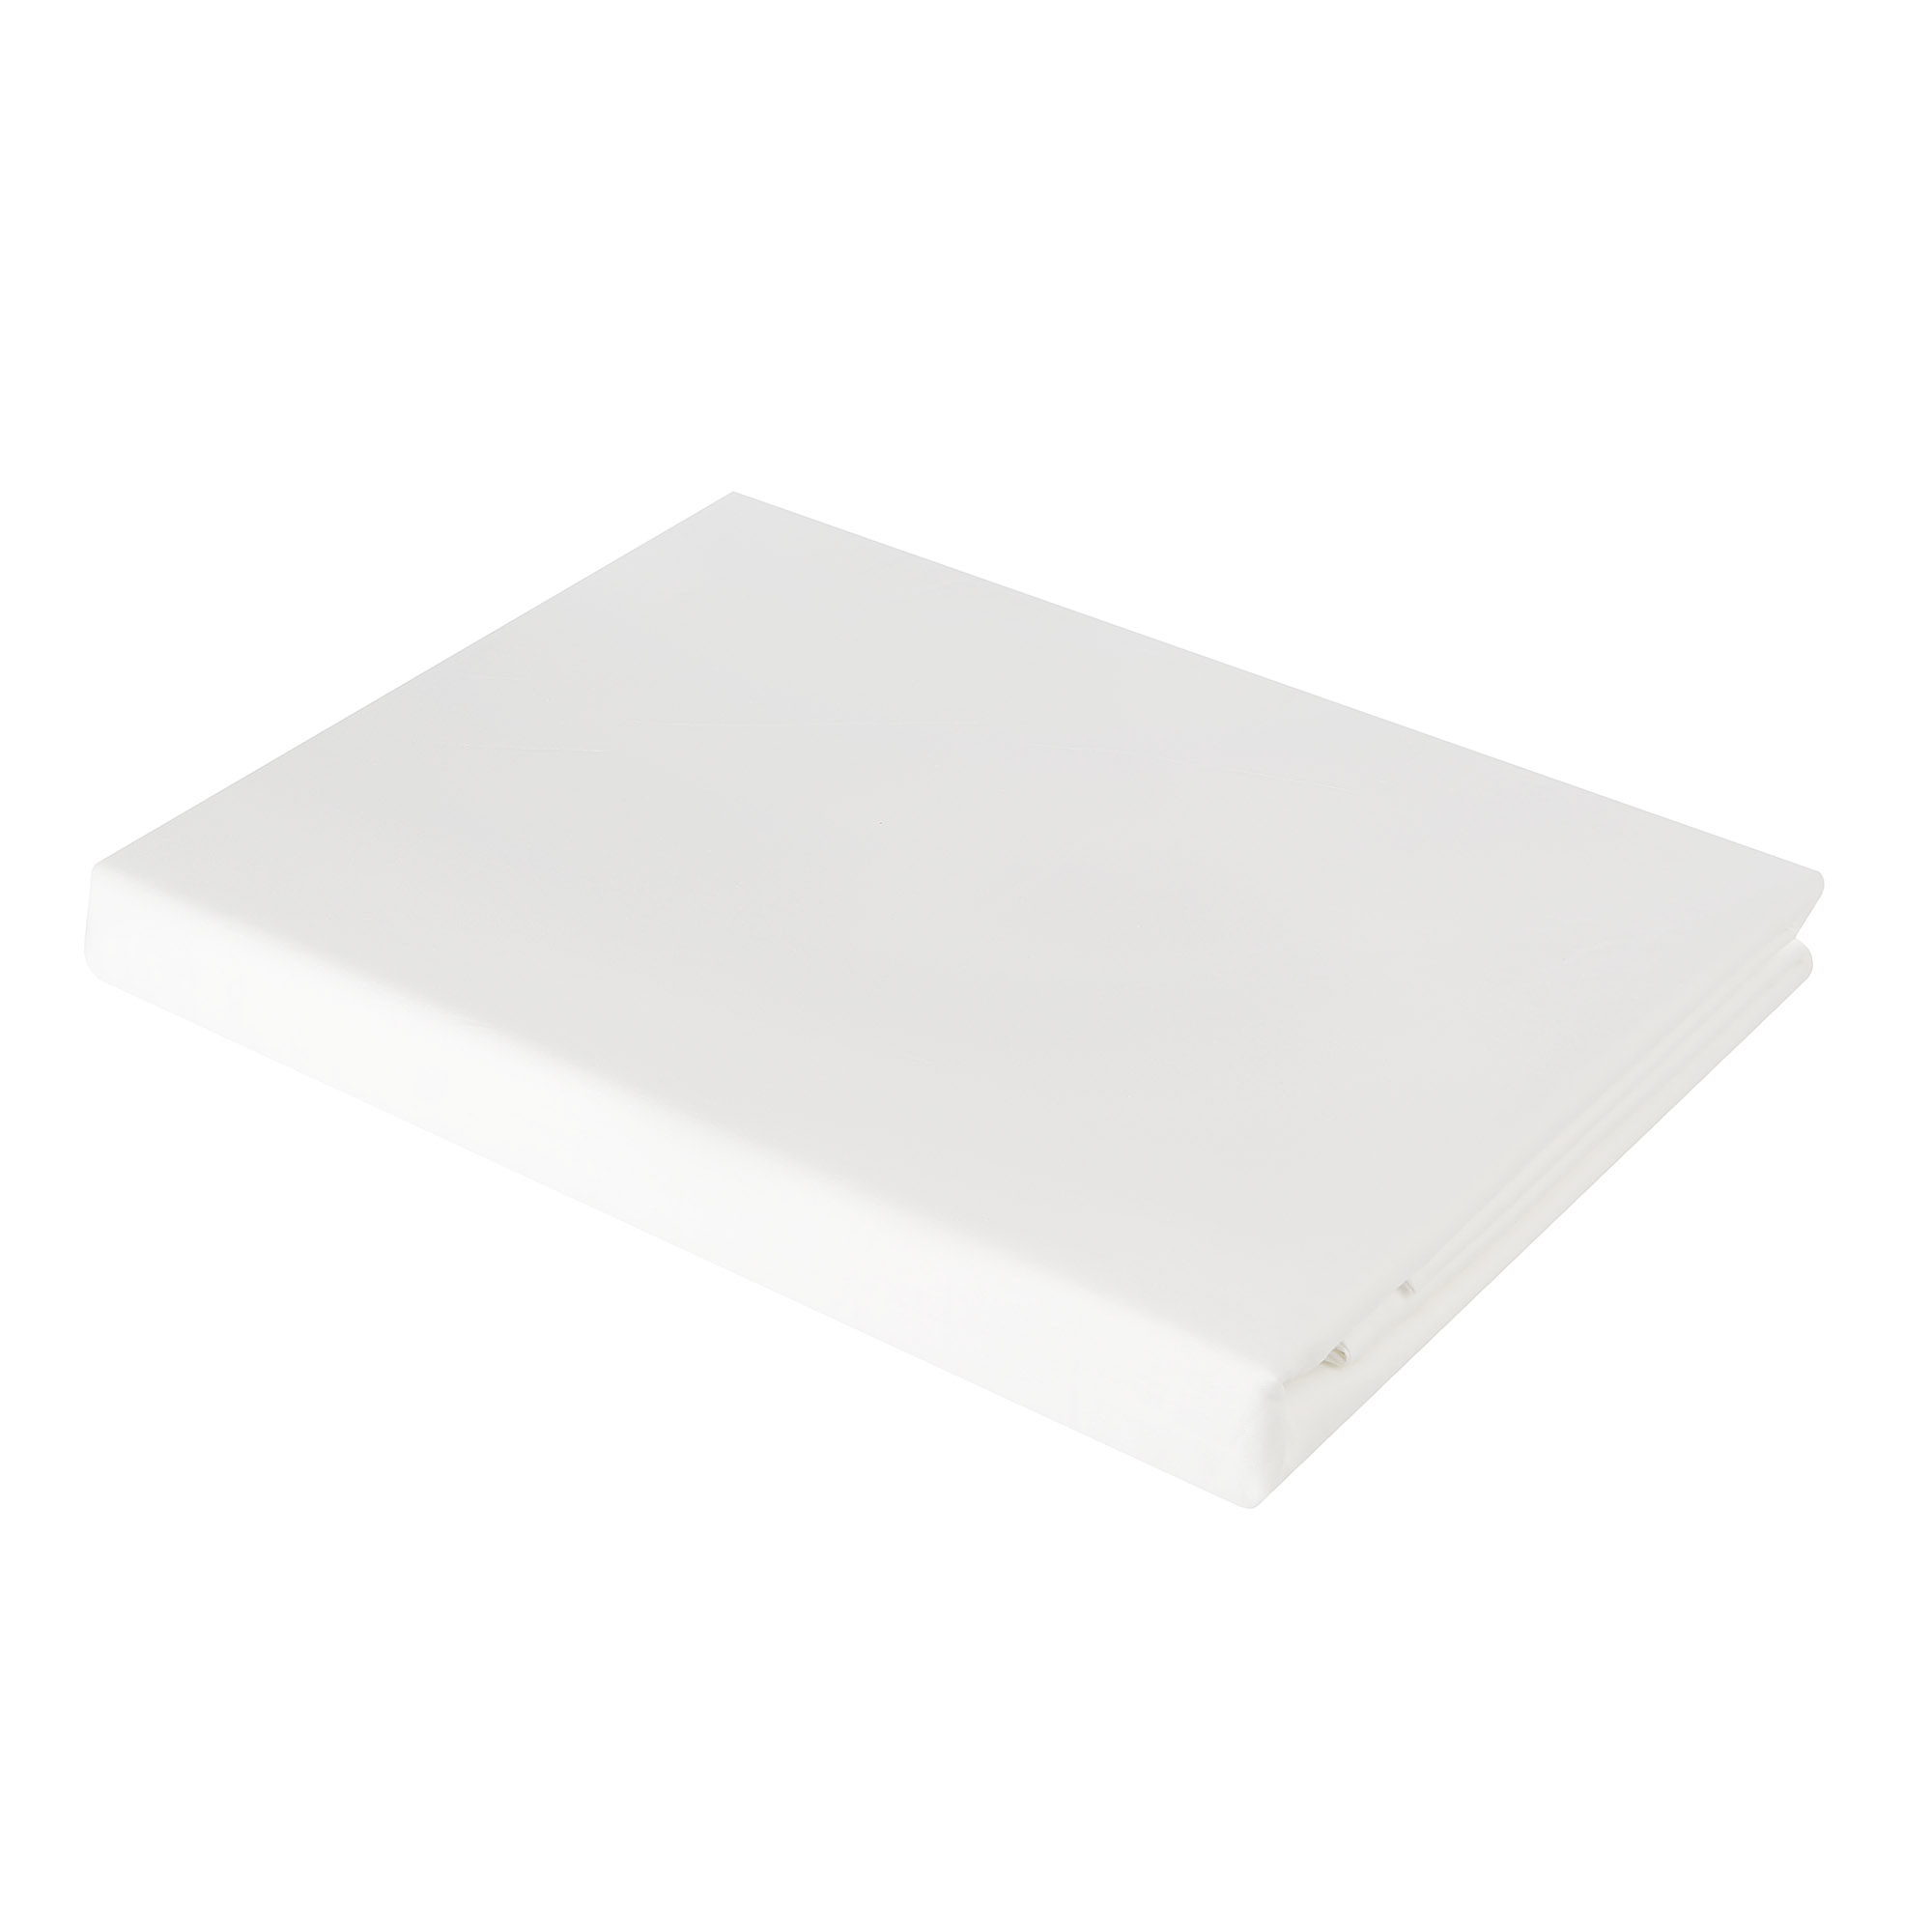 Постельный комплект MONA LIZA двуспальный евро 5206/1, цвет белый, размер Двуспальный евро - фото 1